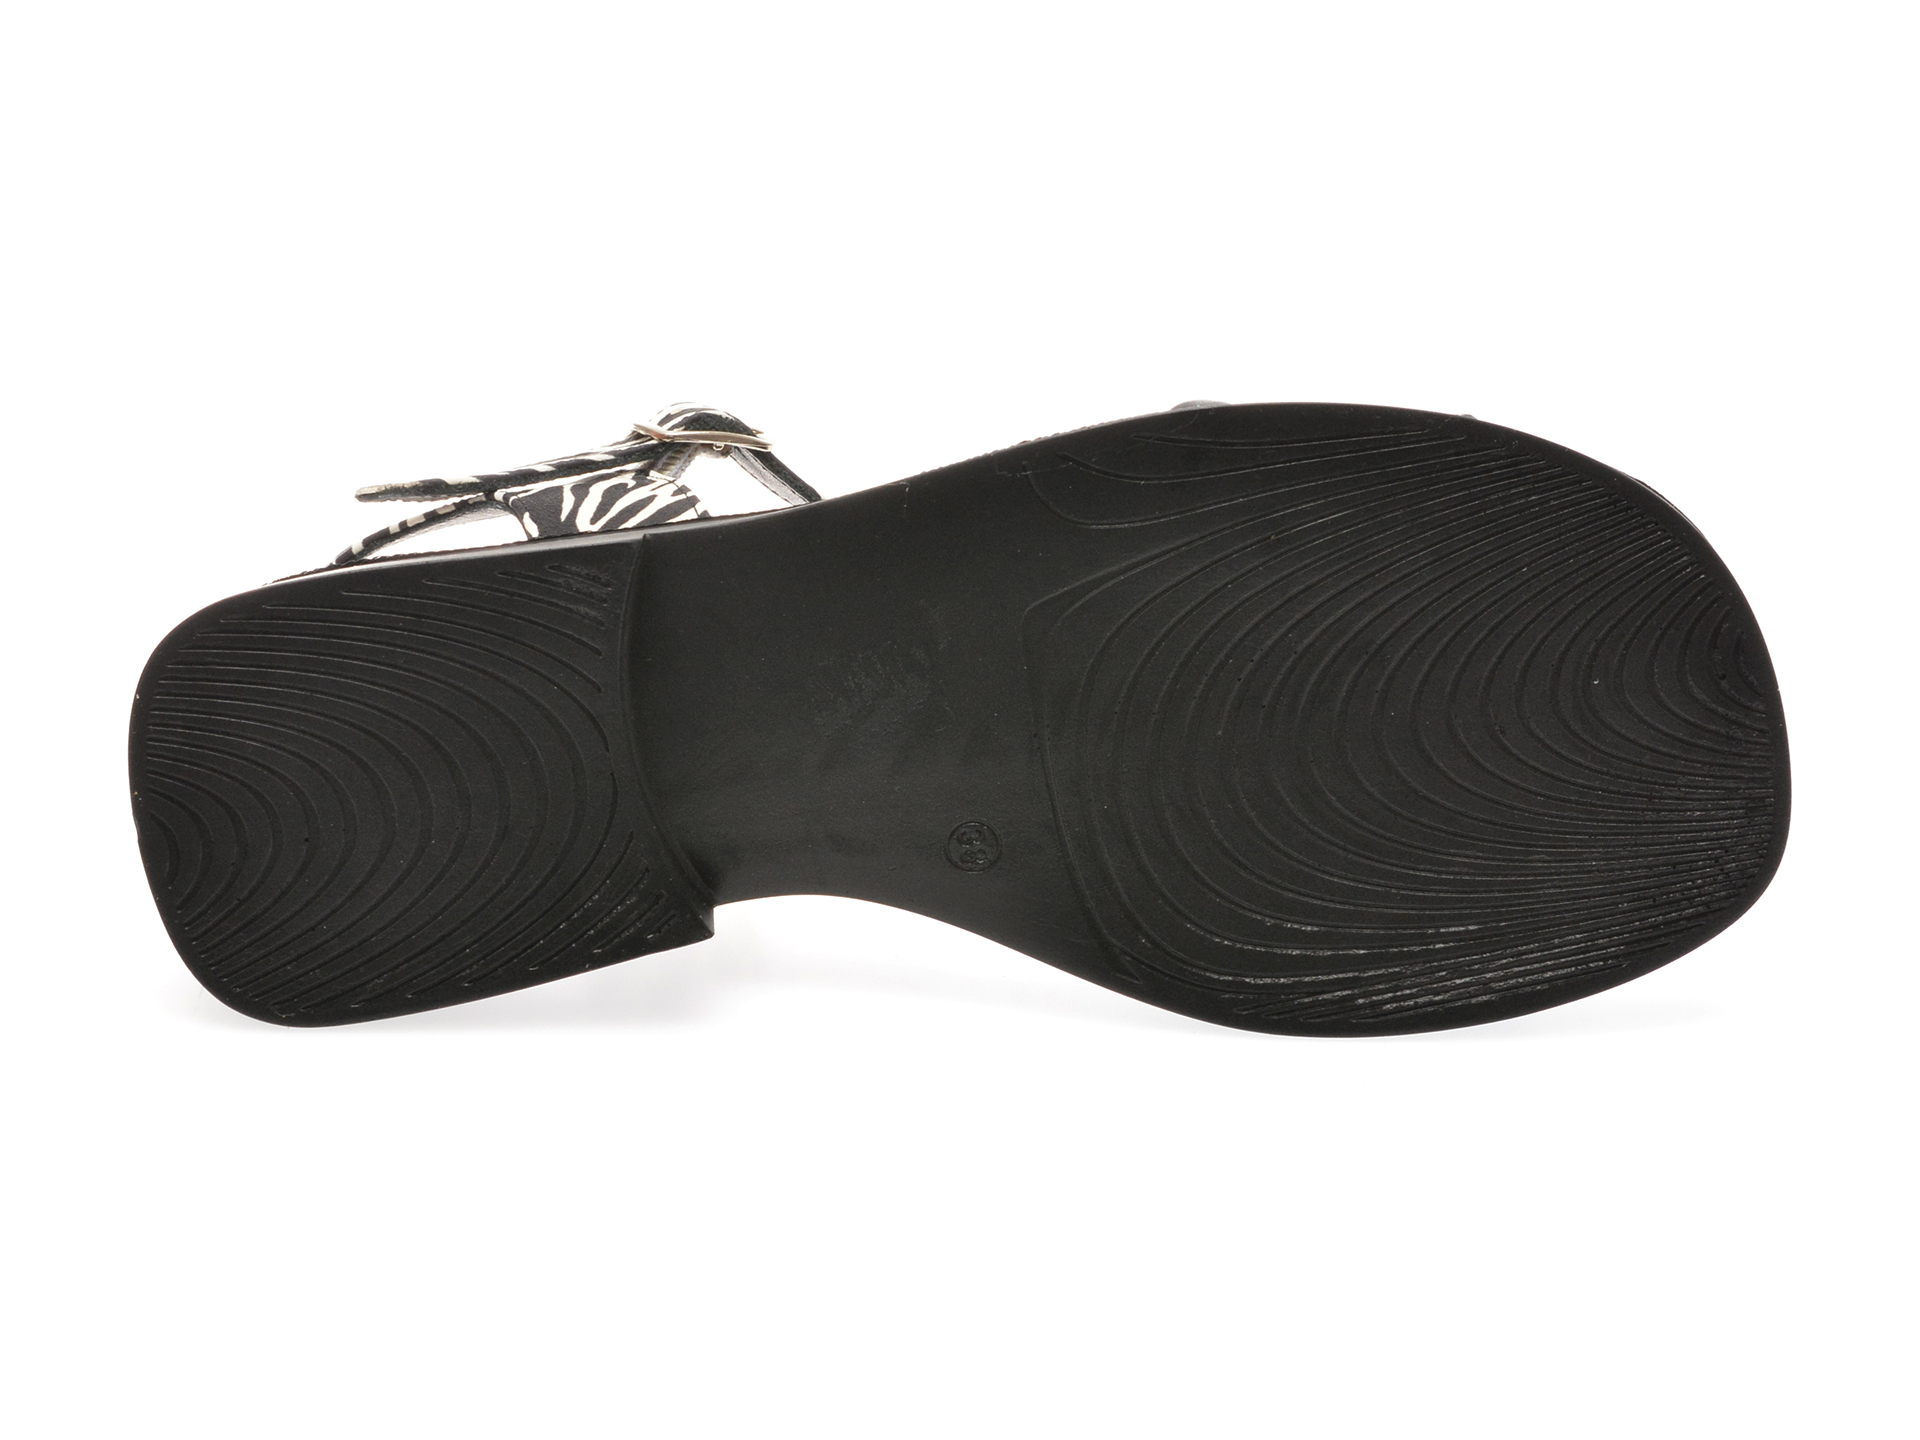 Sandale casual GRYXX alb-negru, 117A111, din piele naturala